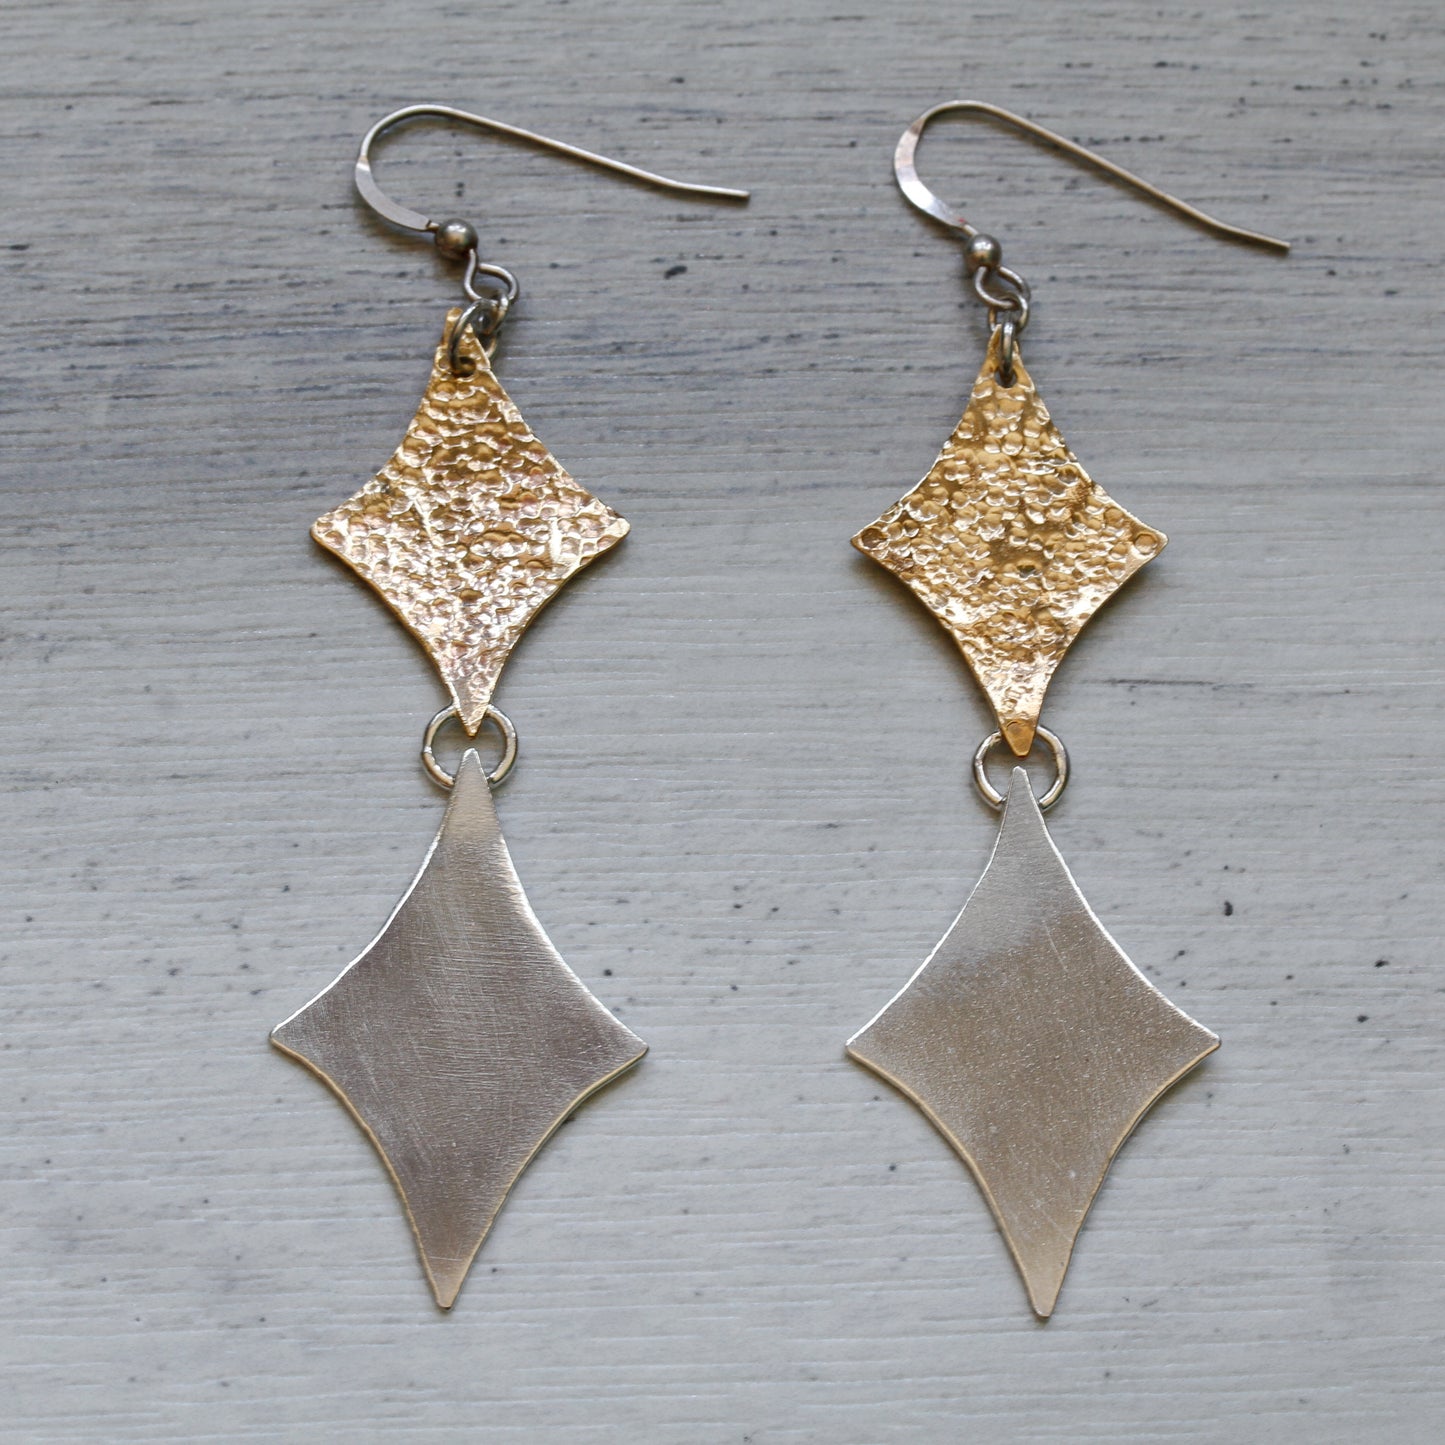 Retro double diamonds modernist inspired earrings